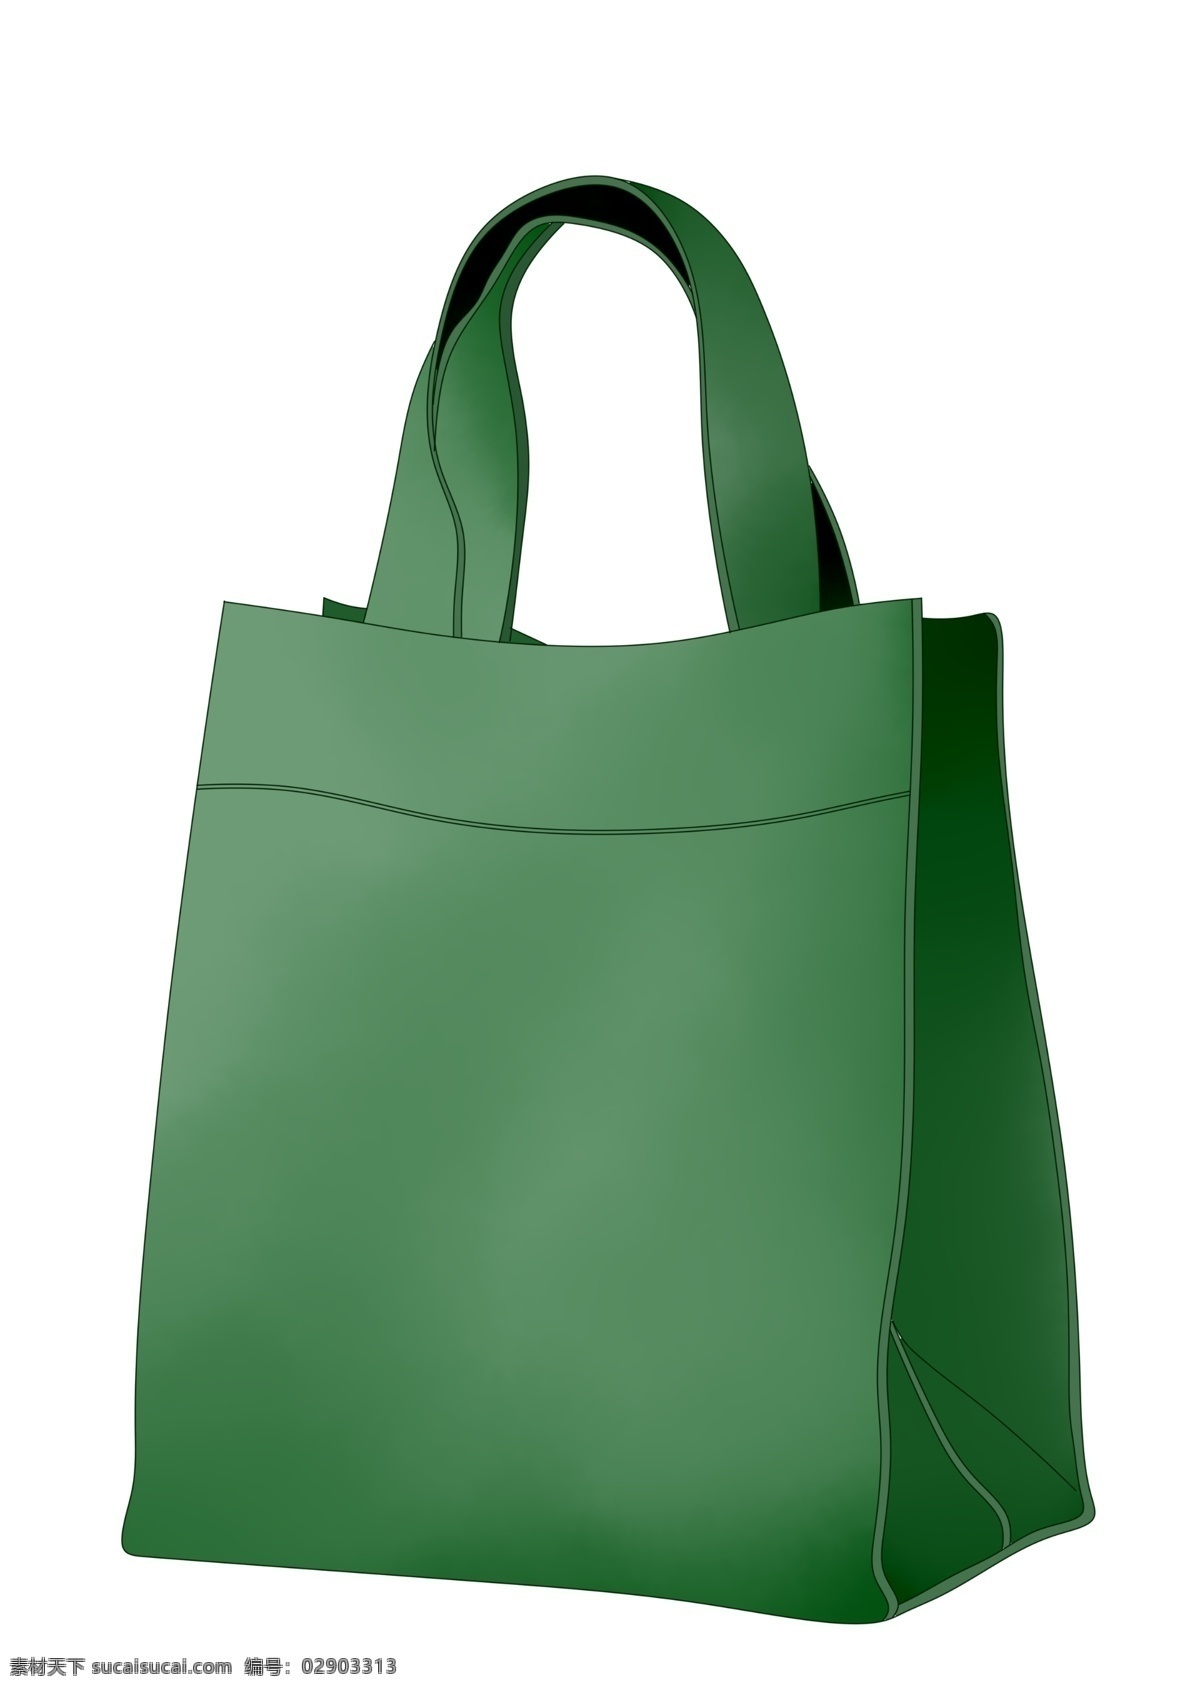 绿色环保 手提袋 插画 环保手提袋 卫生日 绿色手提袋 袋子插画 环保袋 购物袋